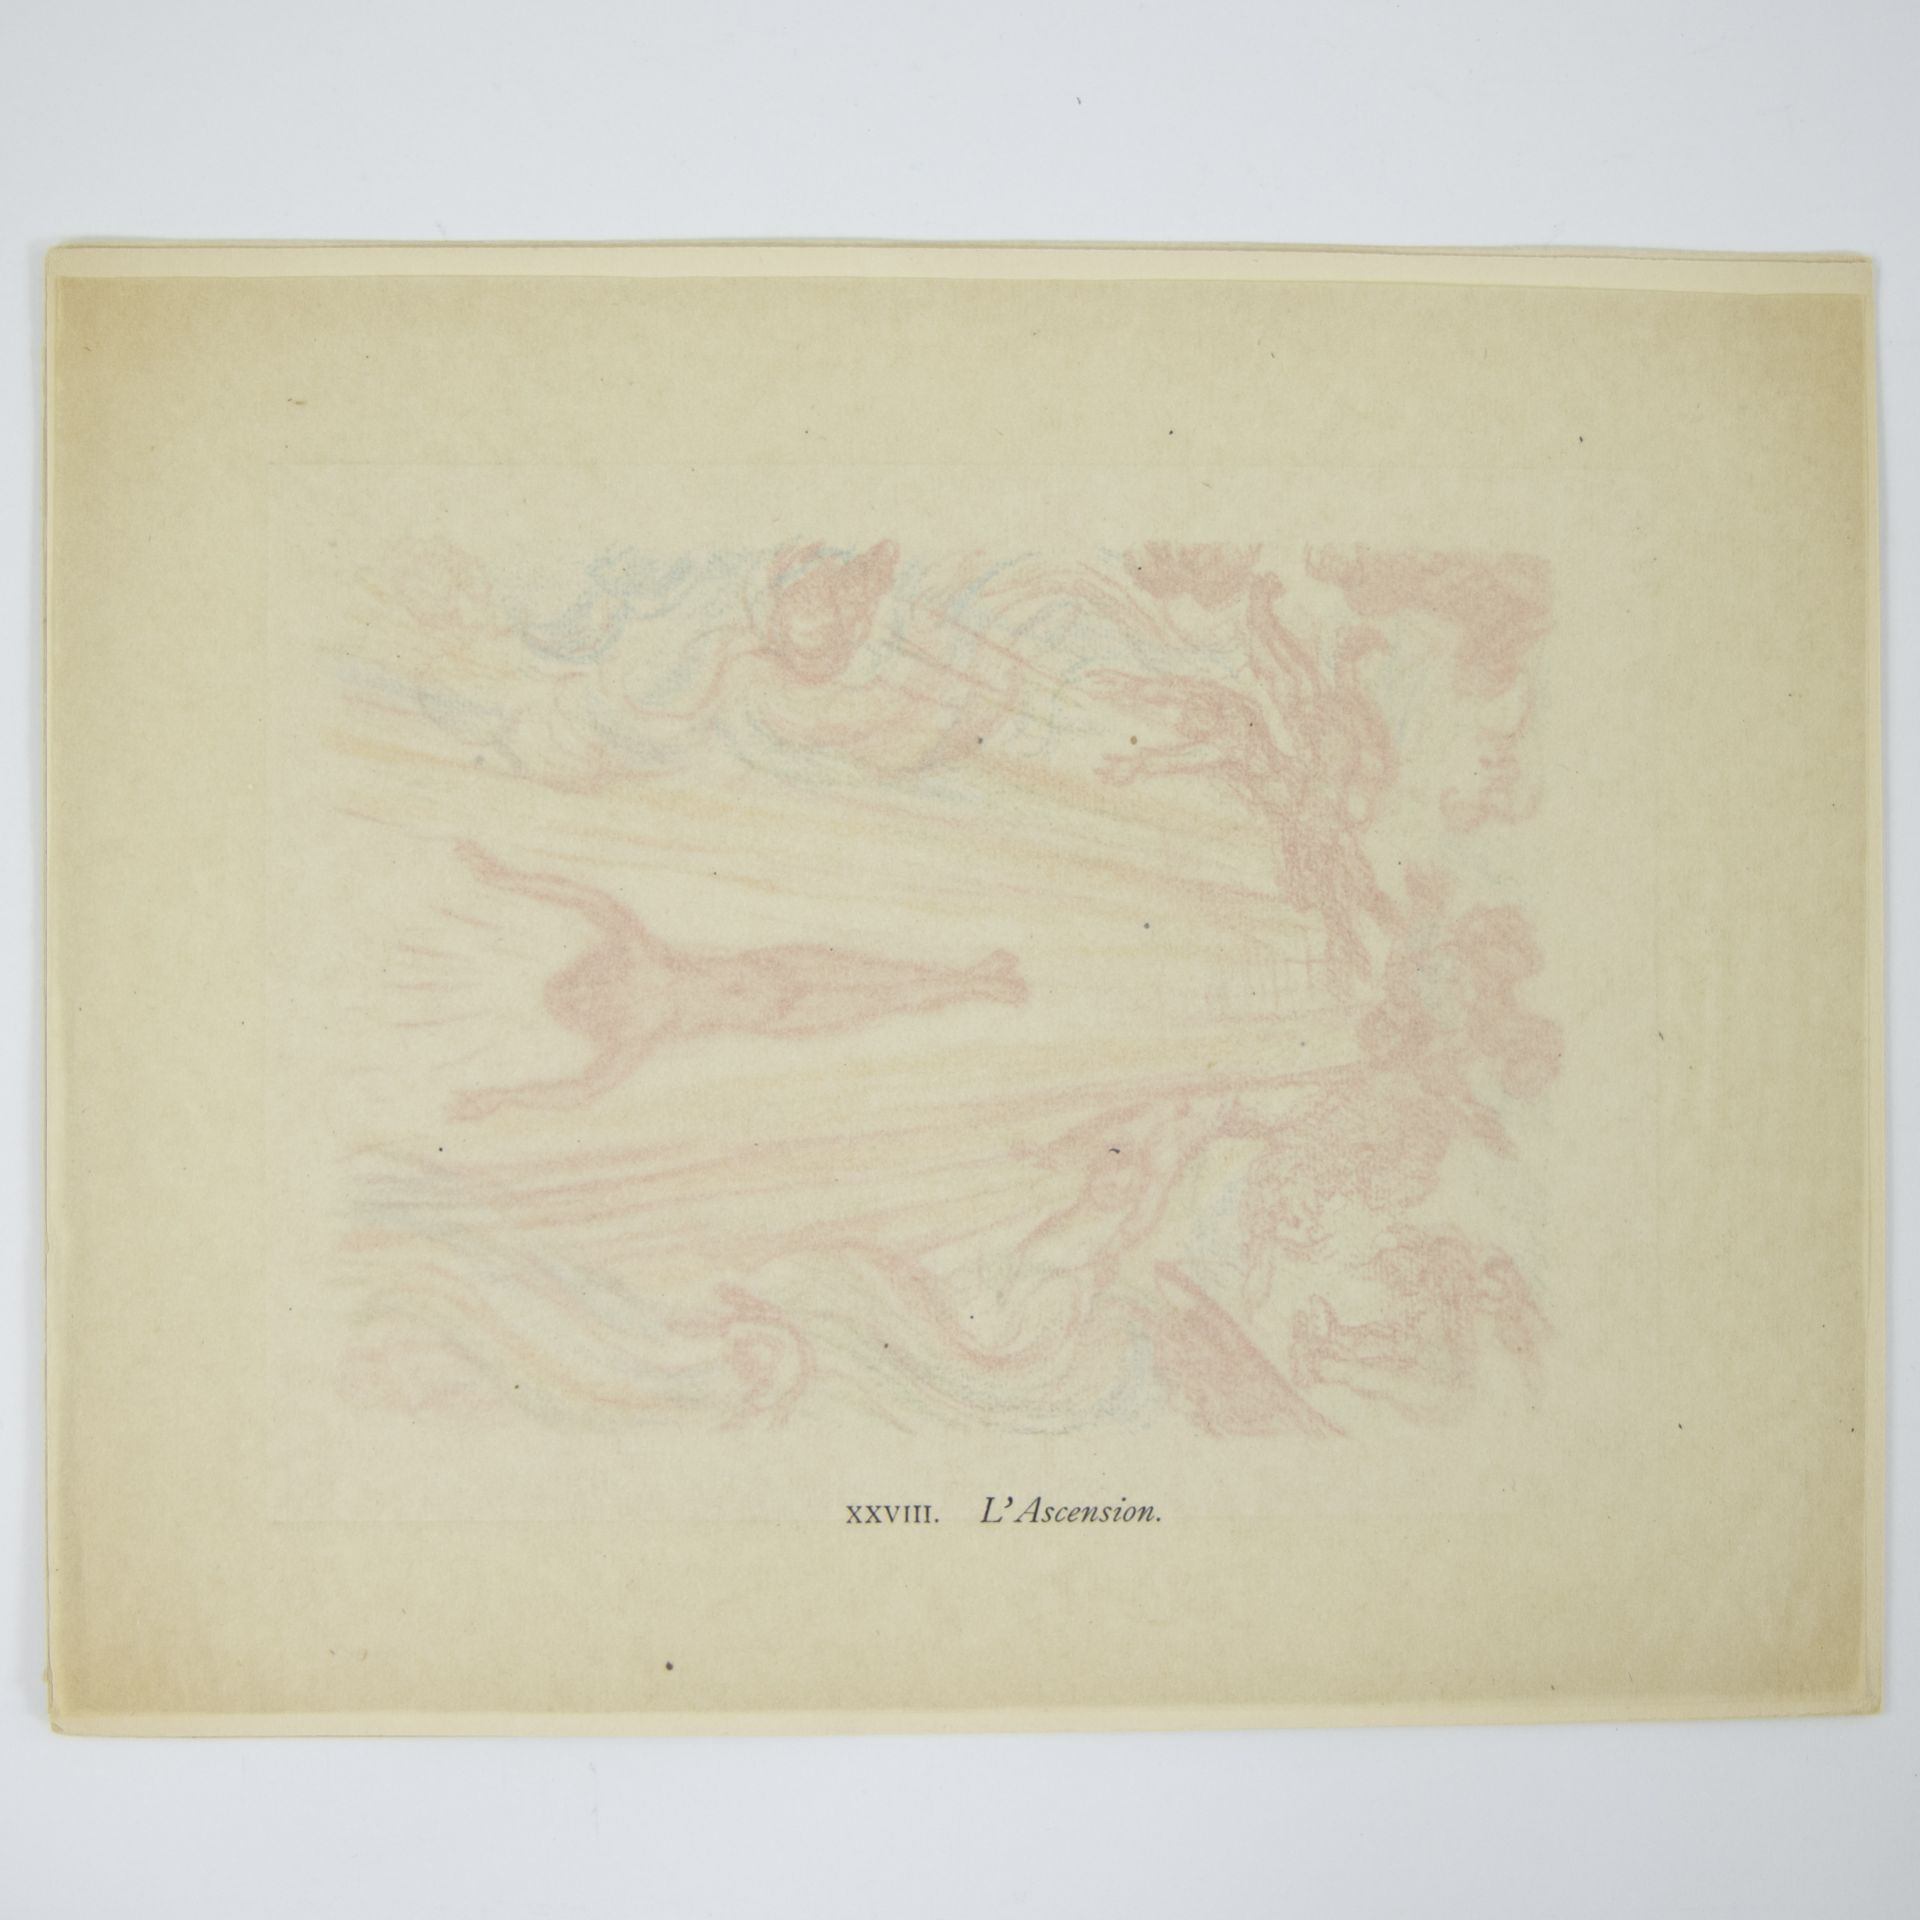 James ENSOR (1860-1949), lithograph from Scènes de la vie du Christ, XXVIII, L'Ascension 1921, from - Bild 2 aus 2